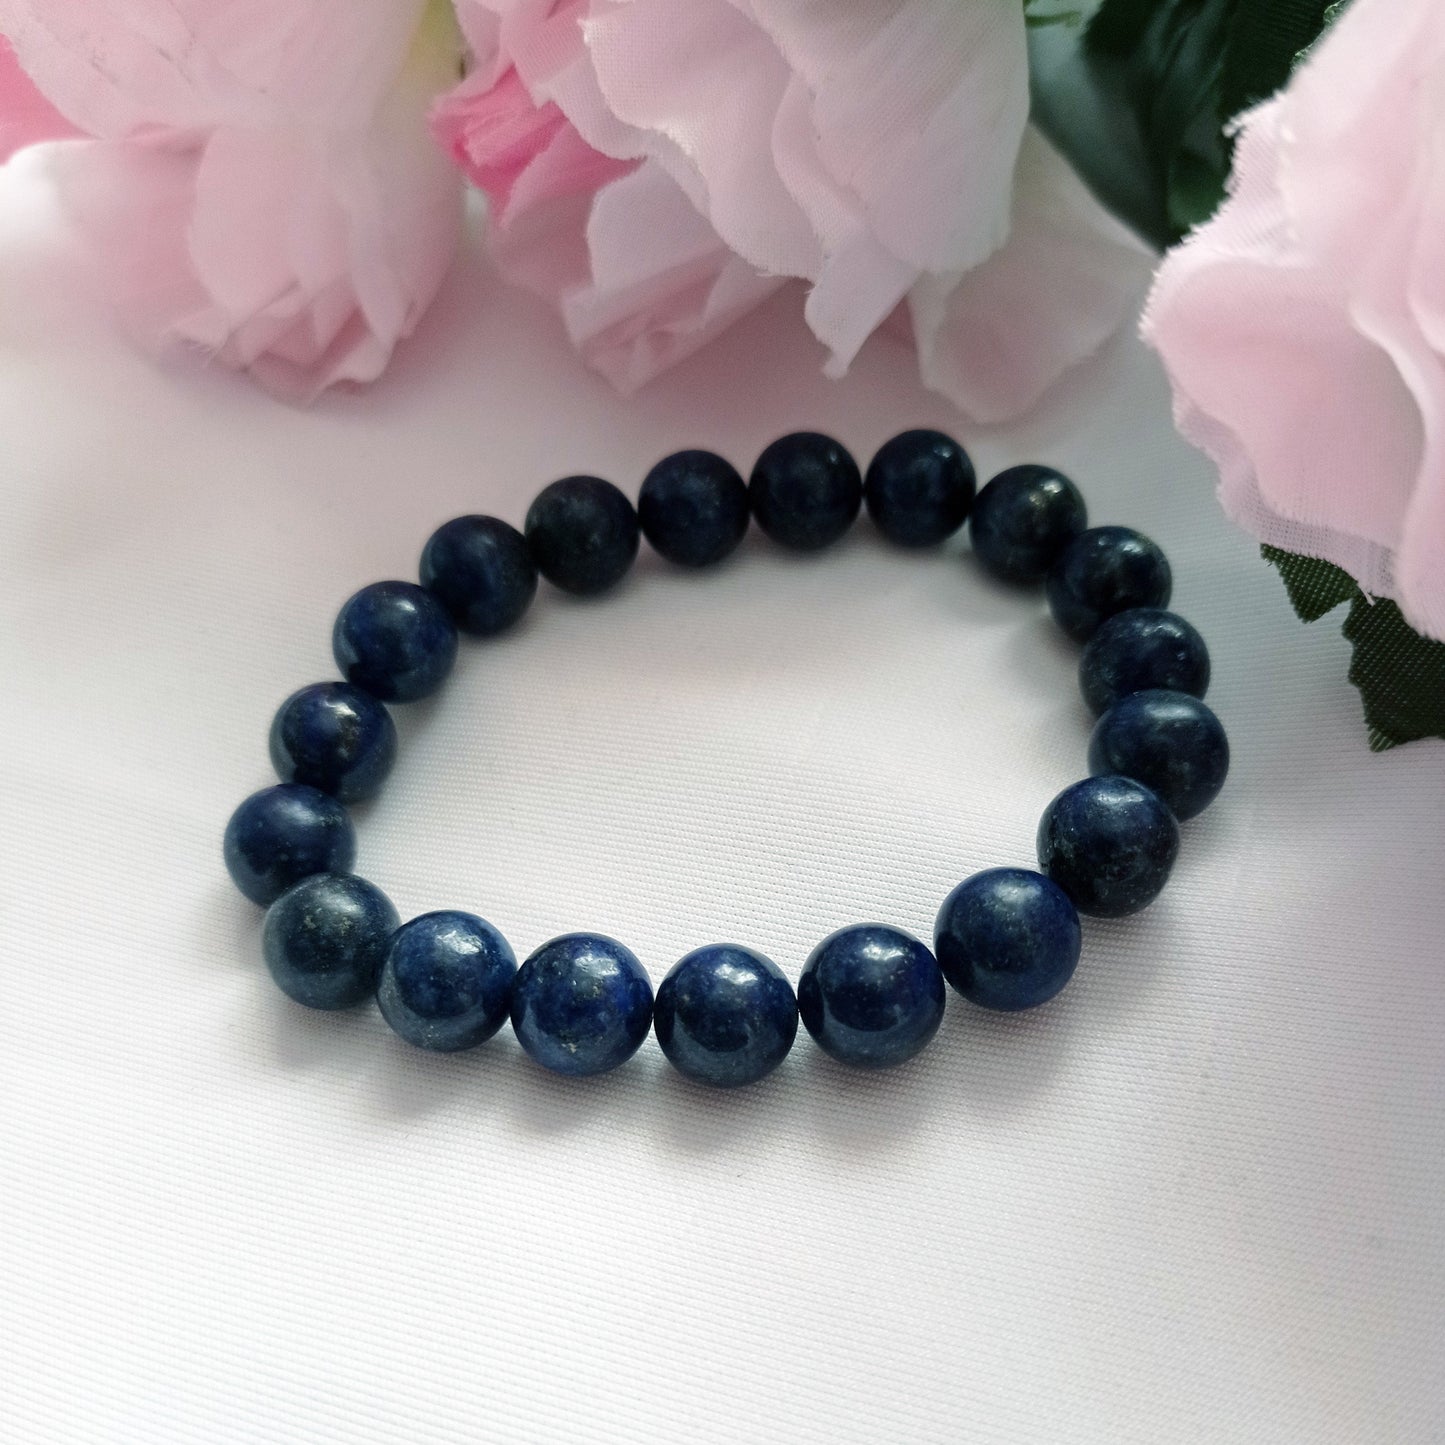 Lapis Lazuli Bracelet, Lapis Lazuli Stretch Bracelet | by nlanlaVictory-1